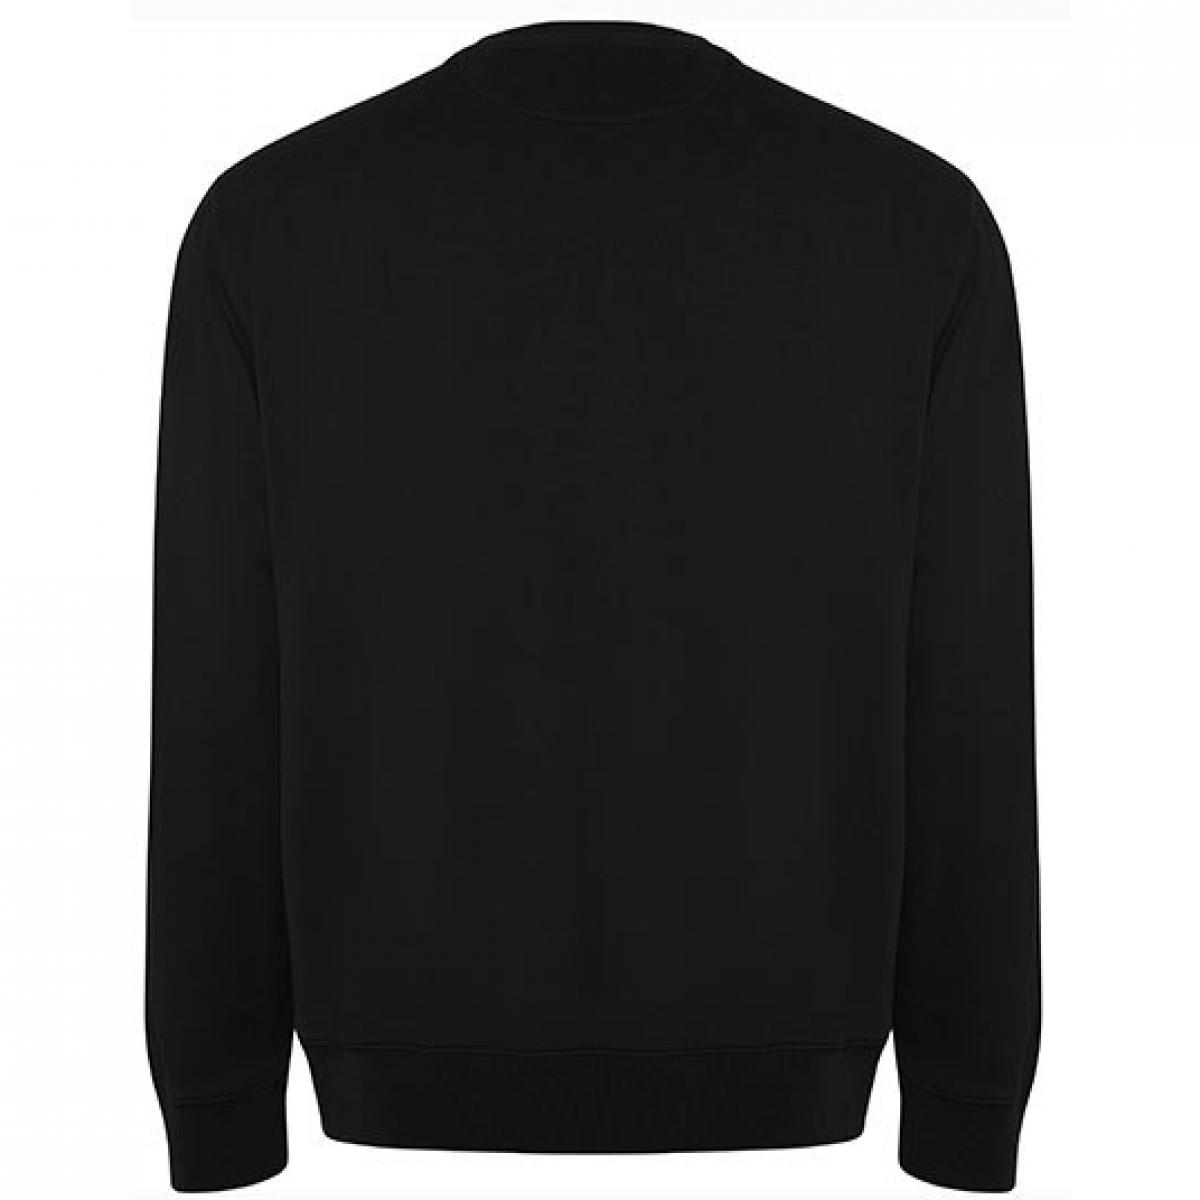 Hersteller: Roly Eco Herstellernummer: SU1071 Artikelbezeichnung: Batian Organic Sweatshirt - Unisex Farbe: Black 02